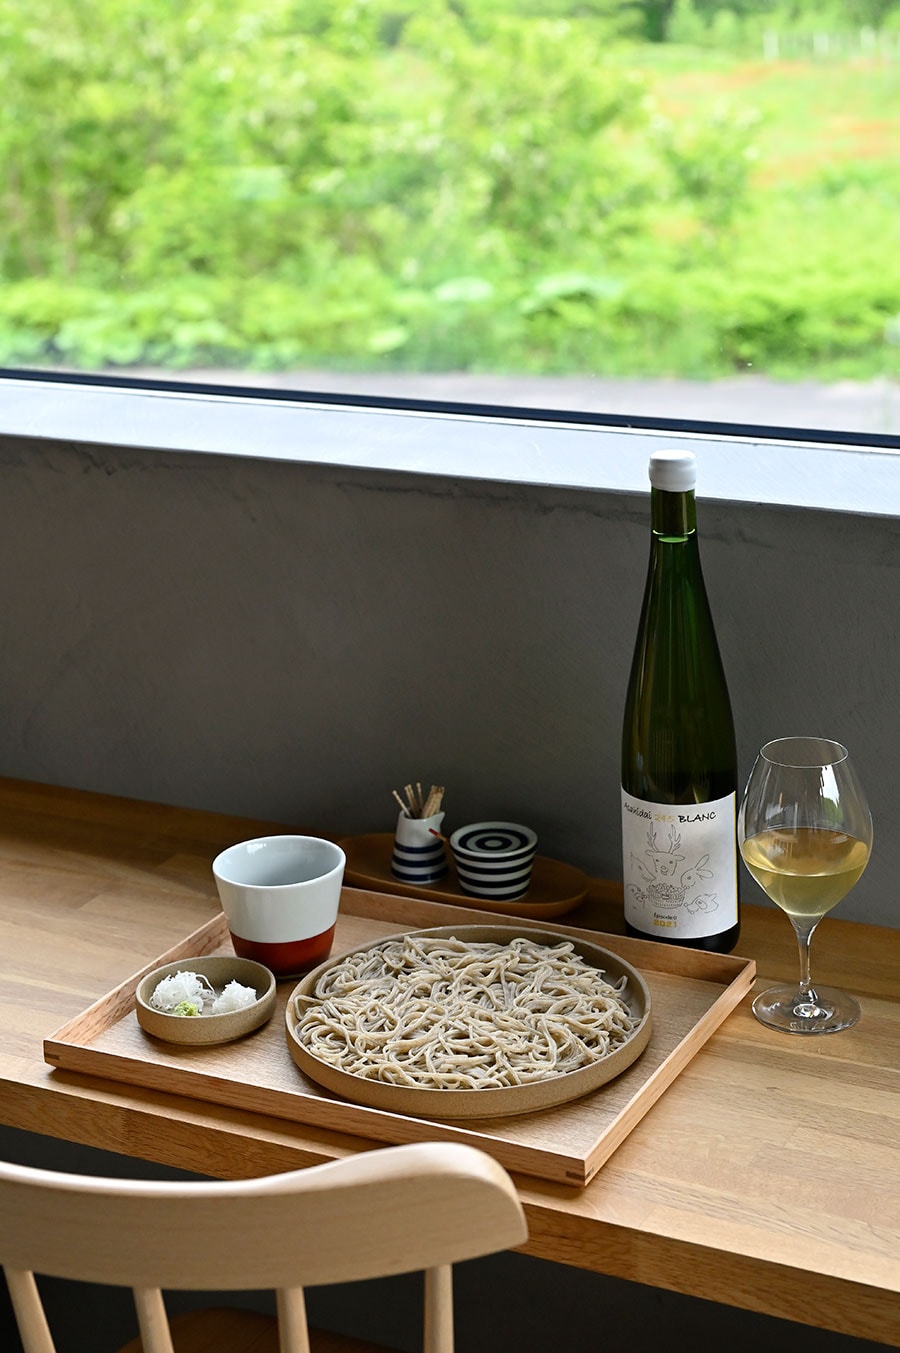 初めて醸造した“Asahidai 245 Blanc”で蕎麦をたぐる。驚くほどの好相性。週末には“丸ヌキ”を使っての十割蕎麦も。蕎麦はご主人、蕎麦前や料理とワインが奥様という棲み分け。